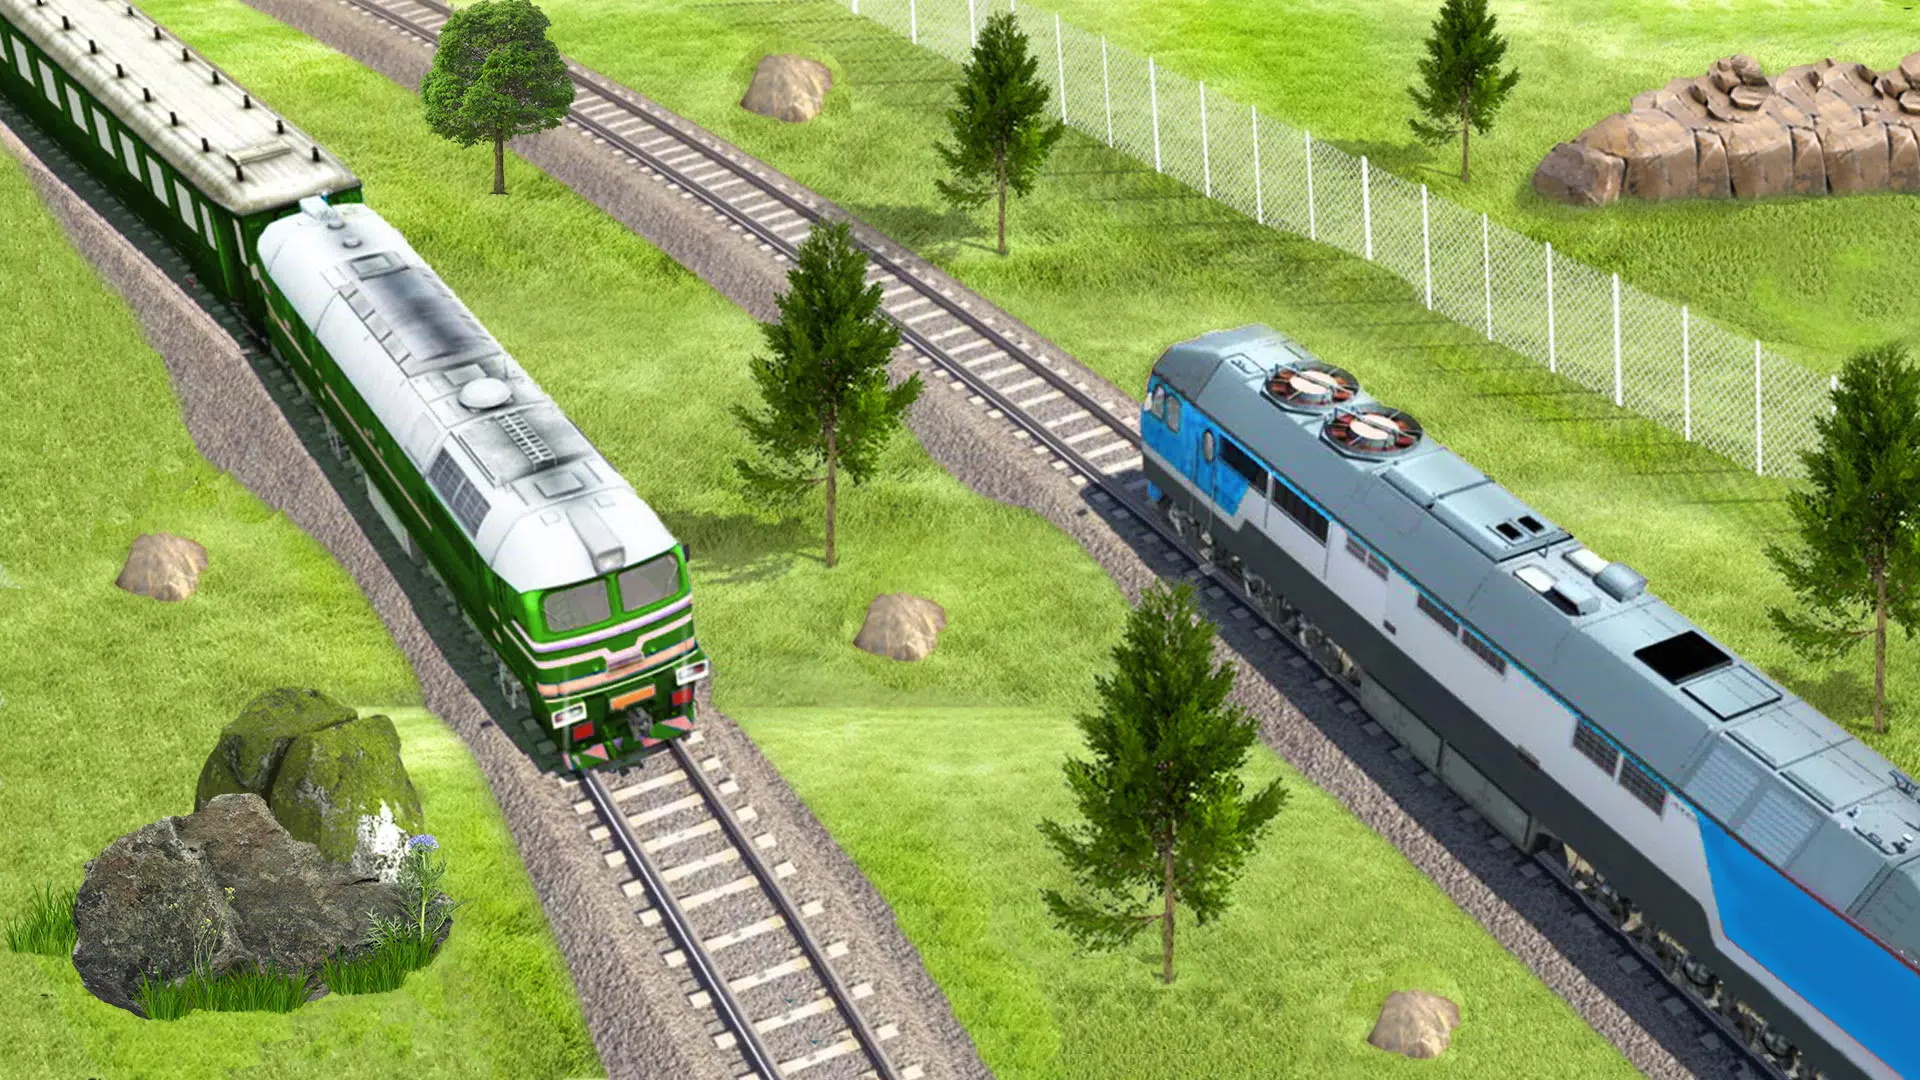 地铁列车模拟器2游戏手机版v3